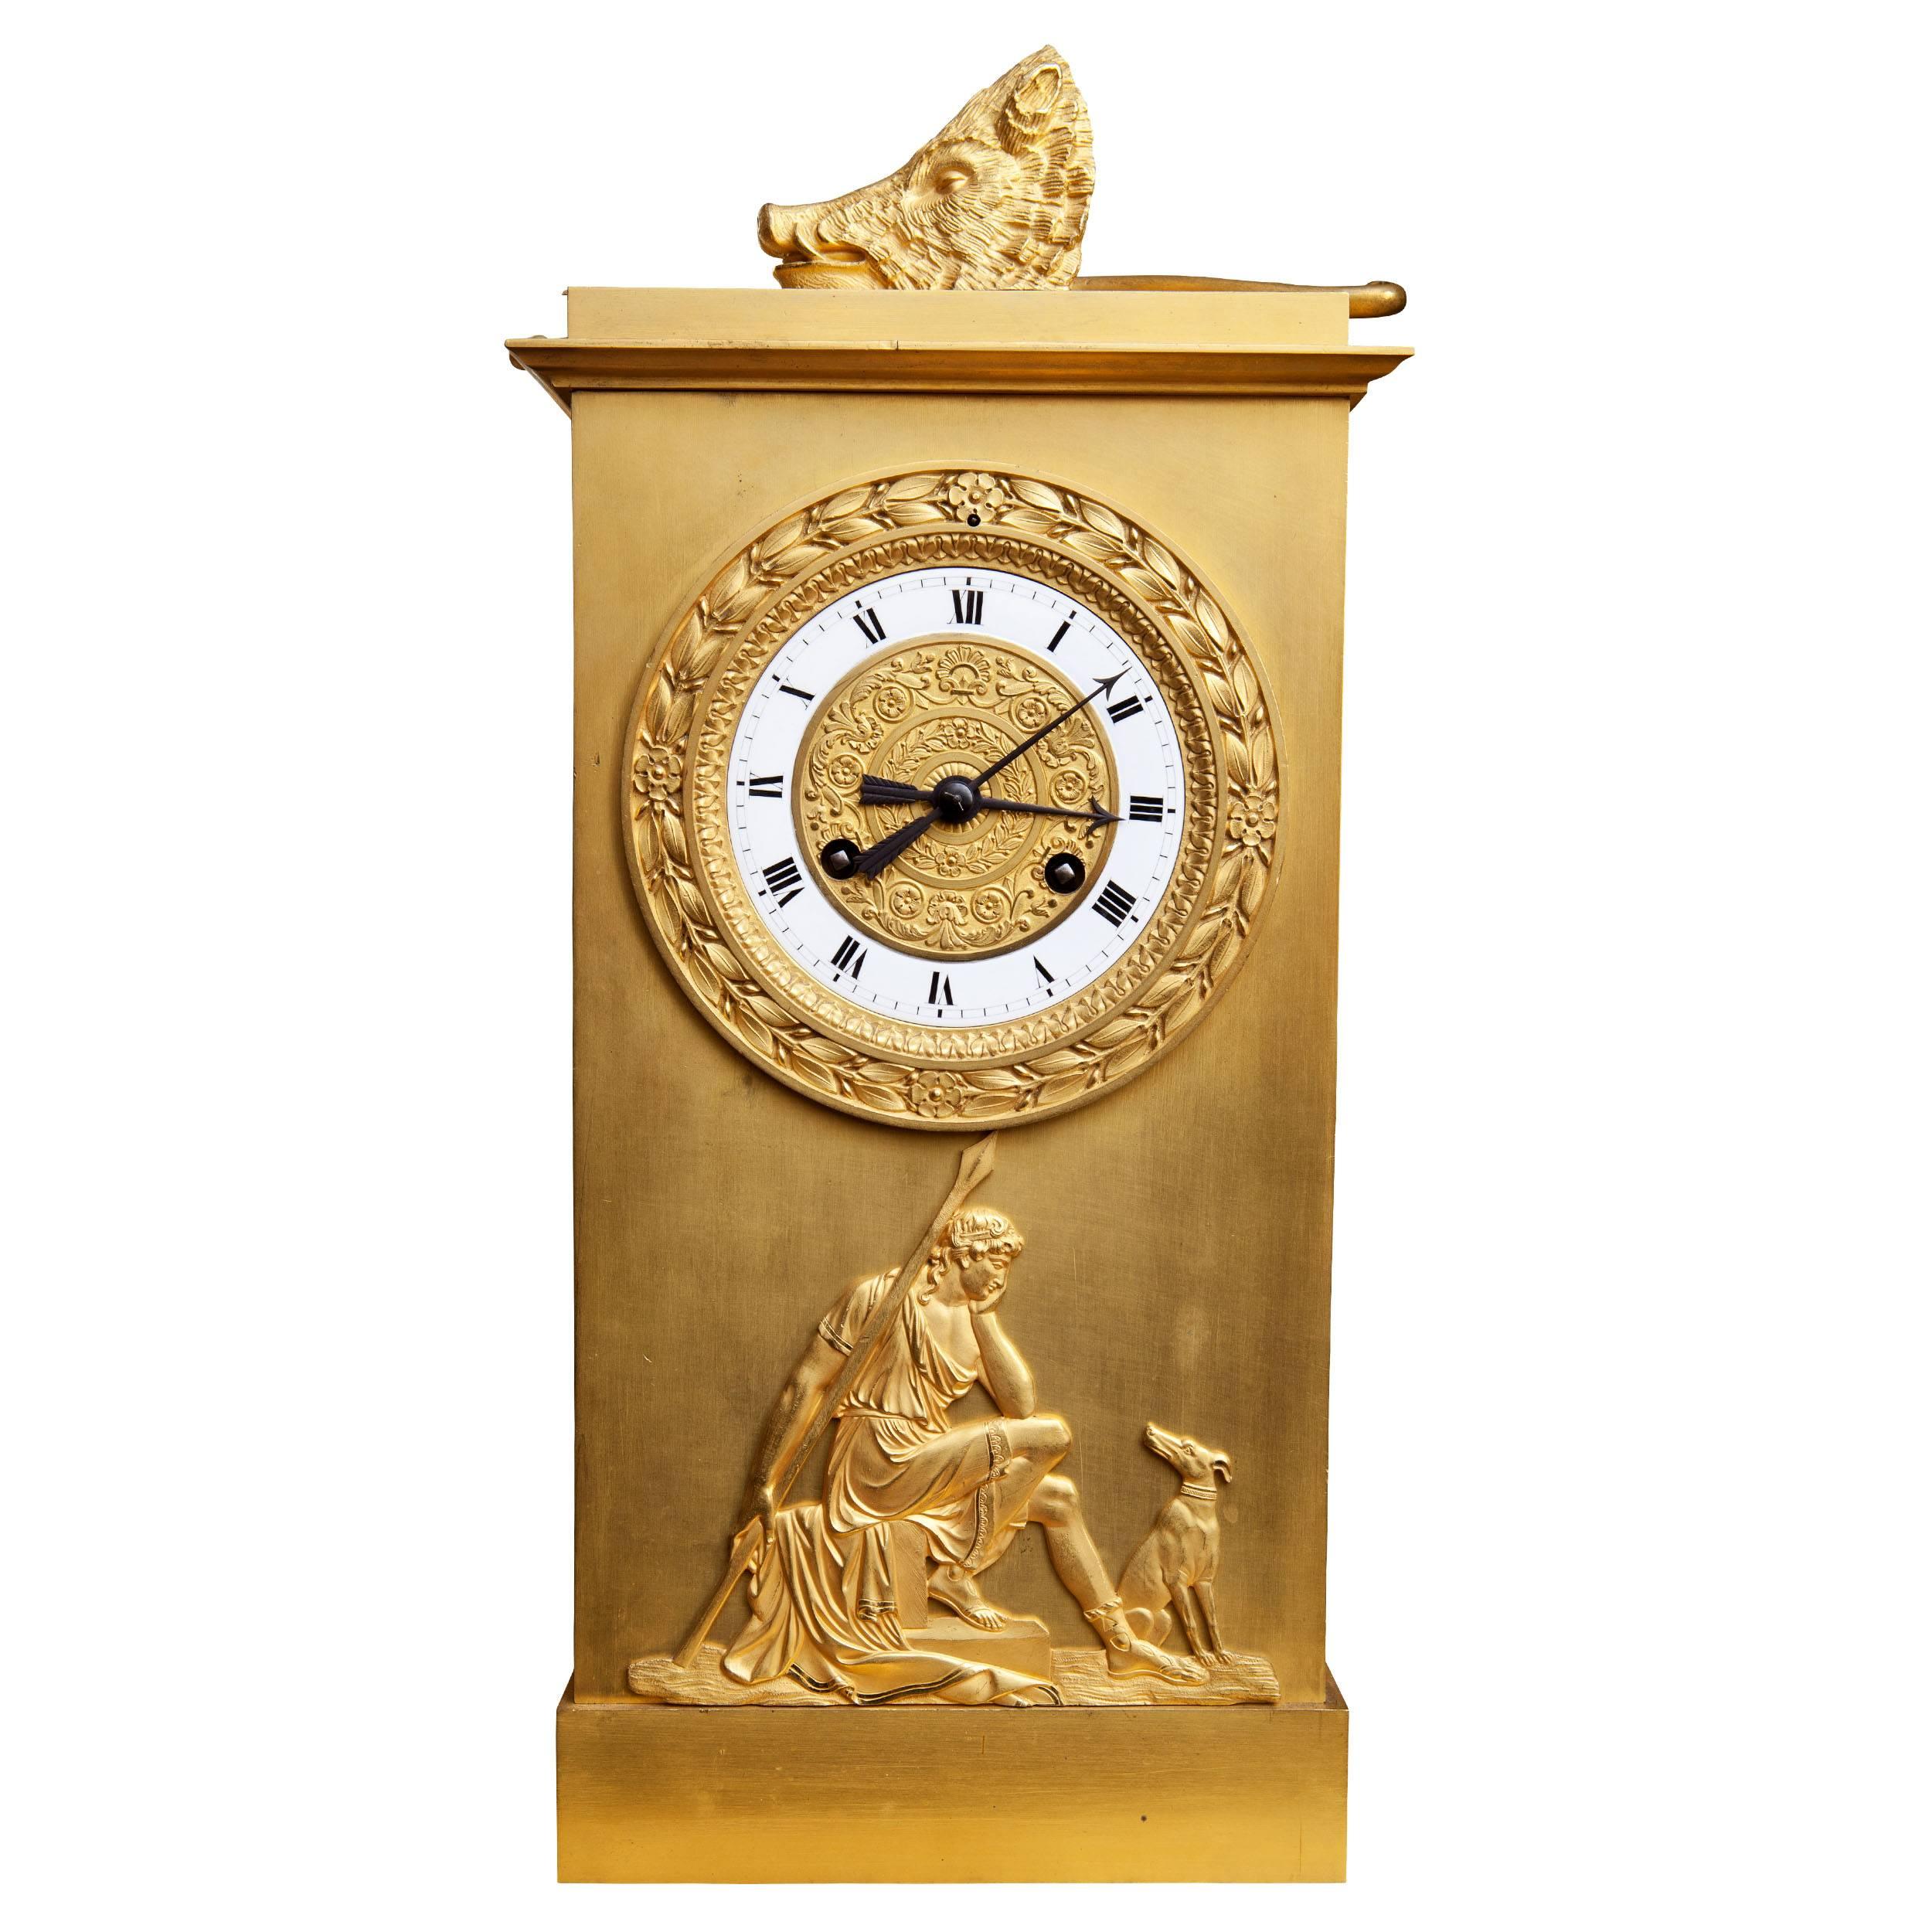 Frankreich, ca. 1820-1830.

Eine großformatige Kaminuhr aus Bronze und vergoldeter Bronze aus dem frühen 19. Jahrhundert, die das Thema Jagd in drei verschiedenen Szenen darstellt. Die bronzene Diana auf der Pirsch; ihr Bogen, ihr Pfeil, ihr Horn